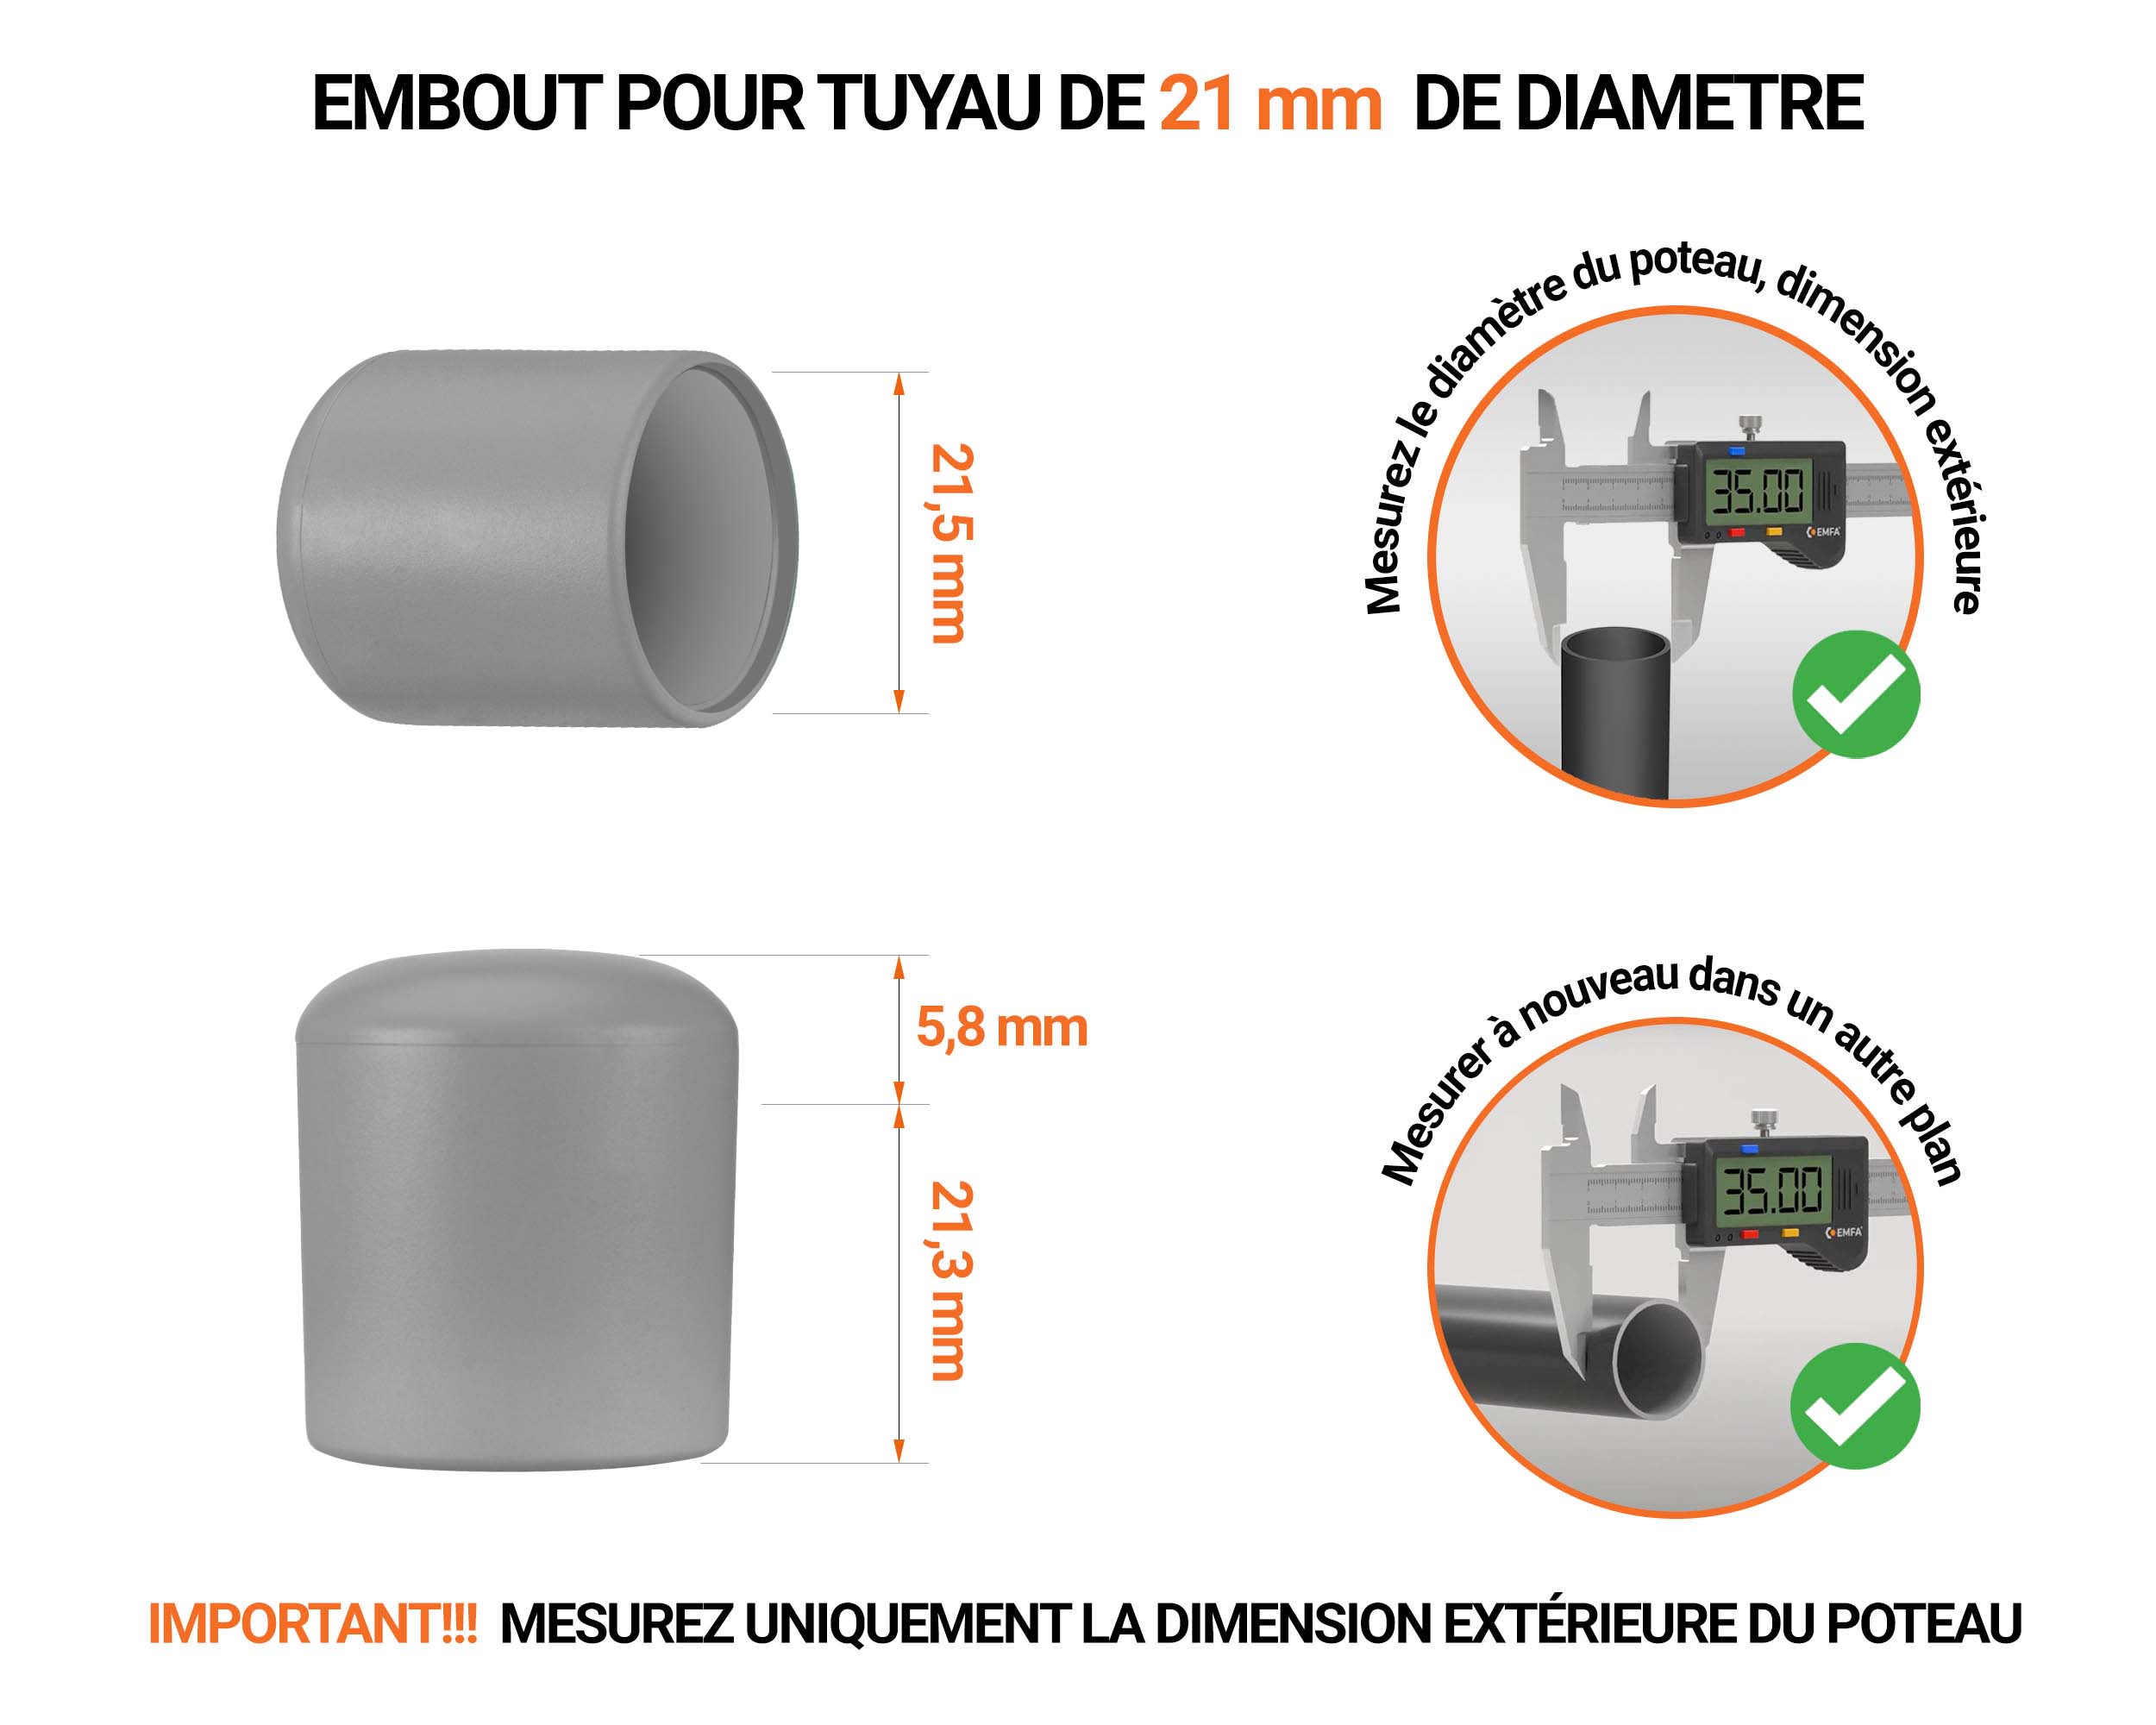 Embout noir de diamètre extérieur 21 mm pour tube rond avec dimensions et guide de mesure correcte du bouchon plastique.